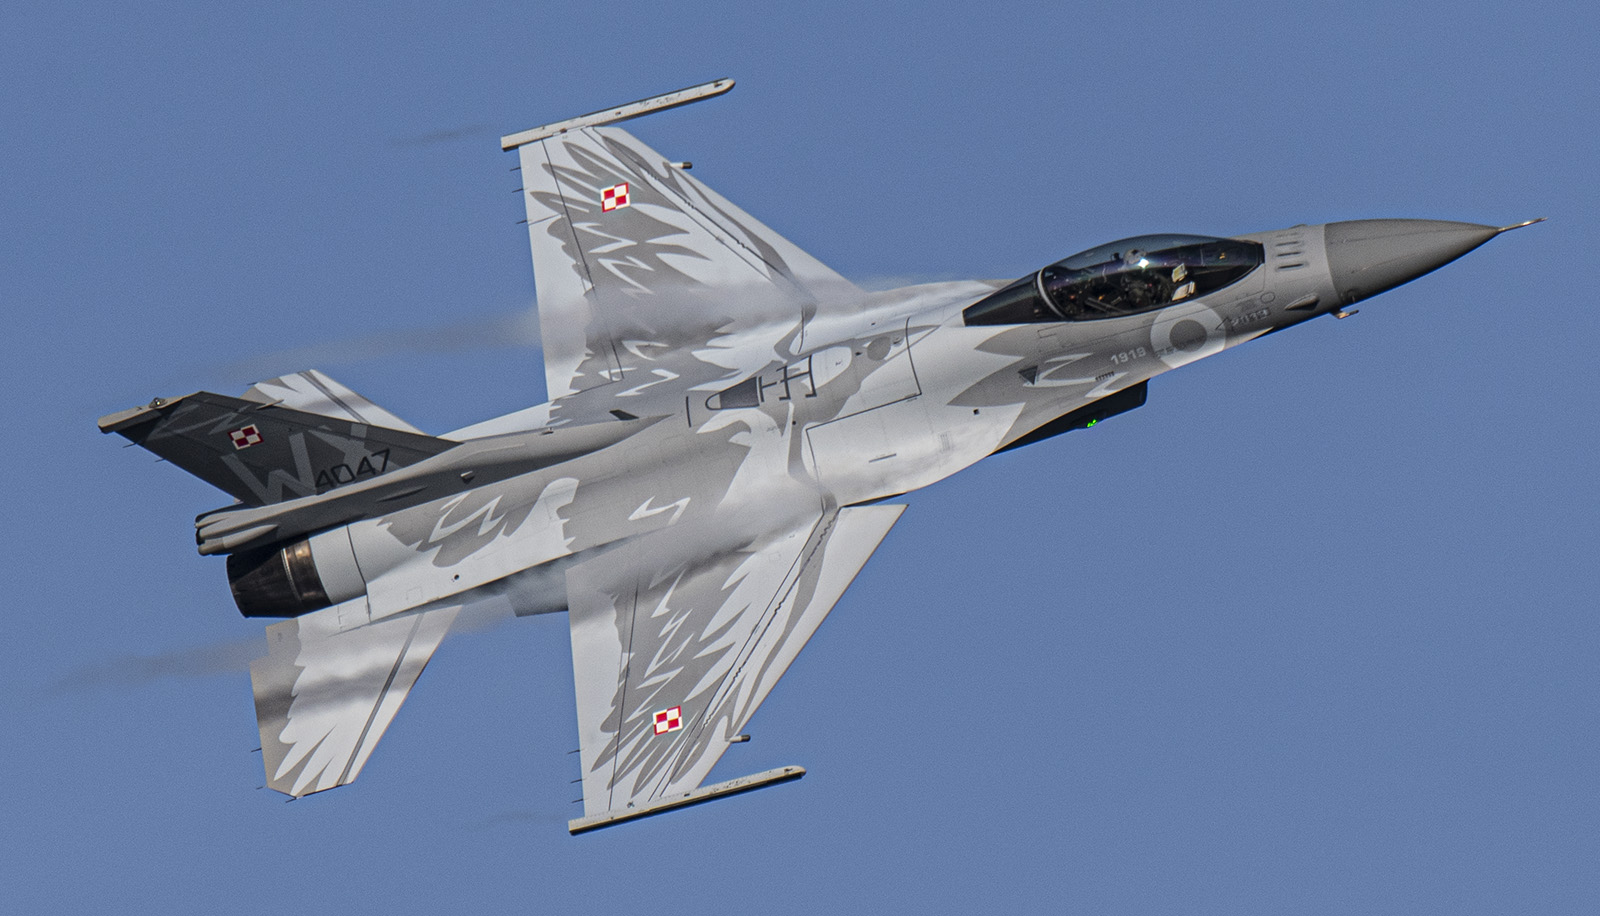 Myśliwce F-16 Fighting Falcon zaczynają patrolować słowacką przestrzeń powietrzną